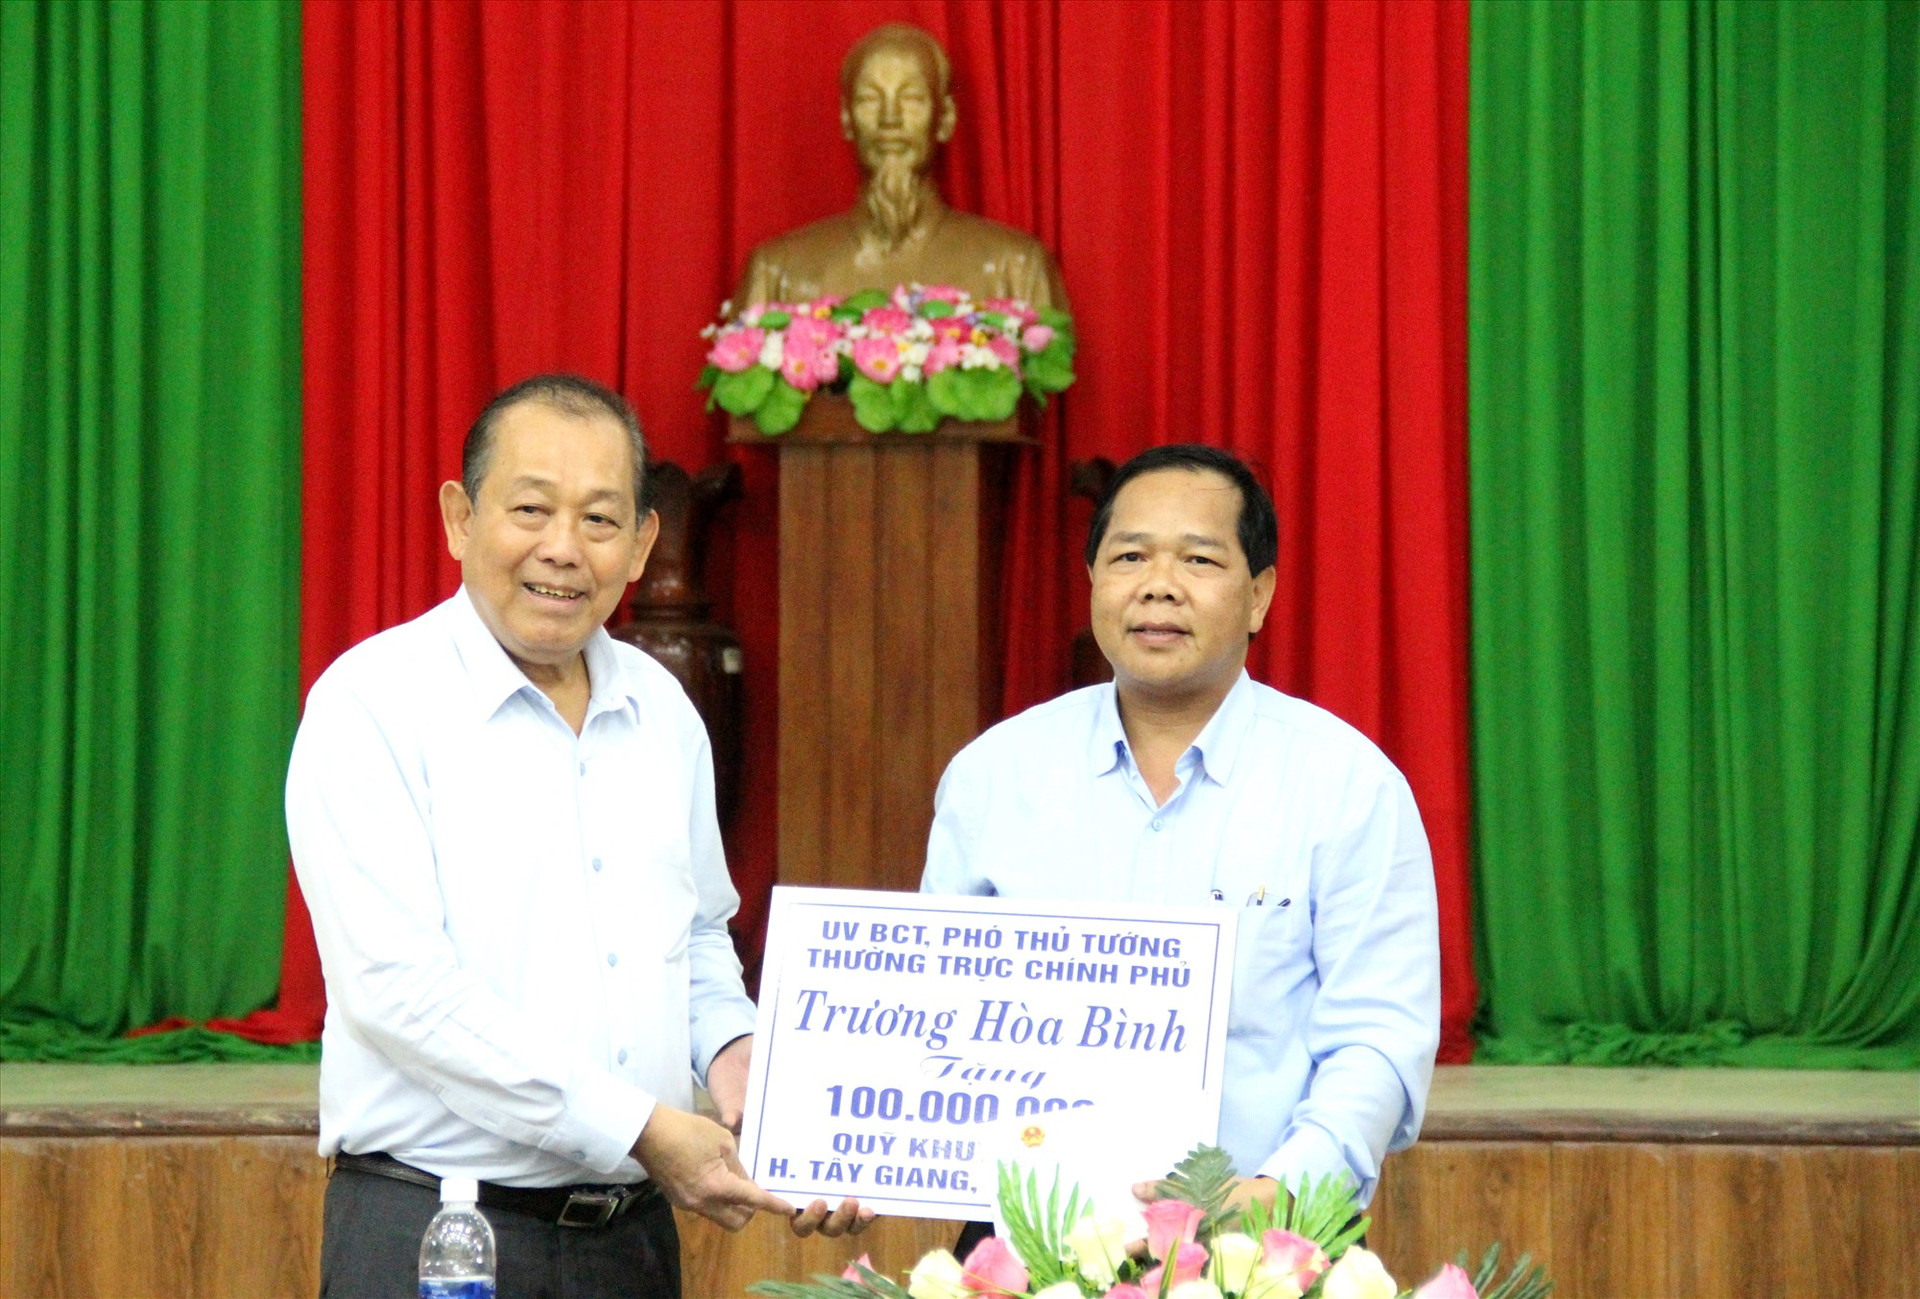 Phó Thủ tướng Thường trực Chính phủ Trương Hòa Bình trao quà hỗ trợ khuyến học cho huyện Tây Giang. Ảnh: ALĂNG NGƯỚC